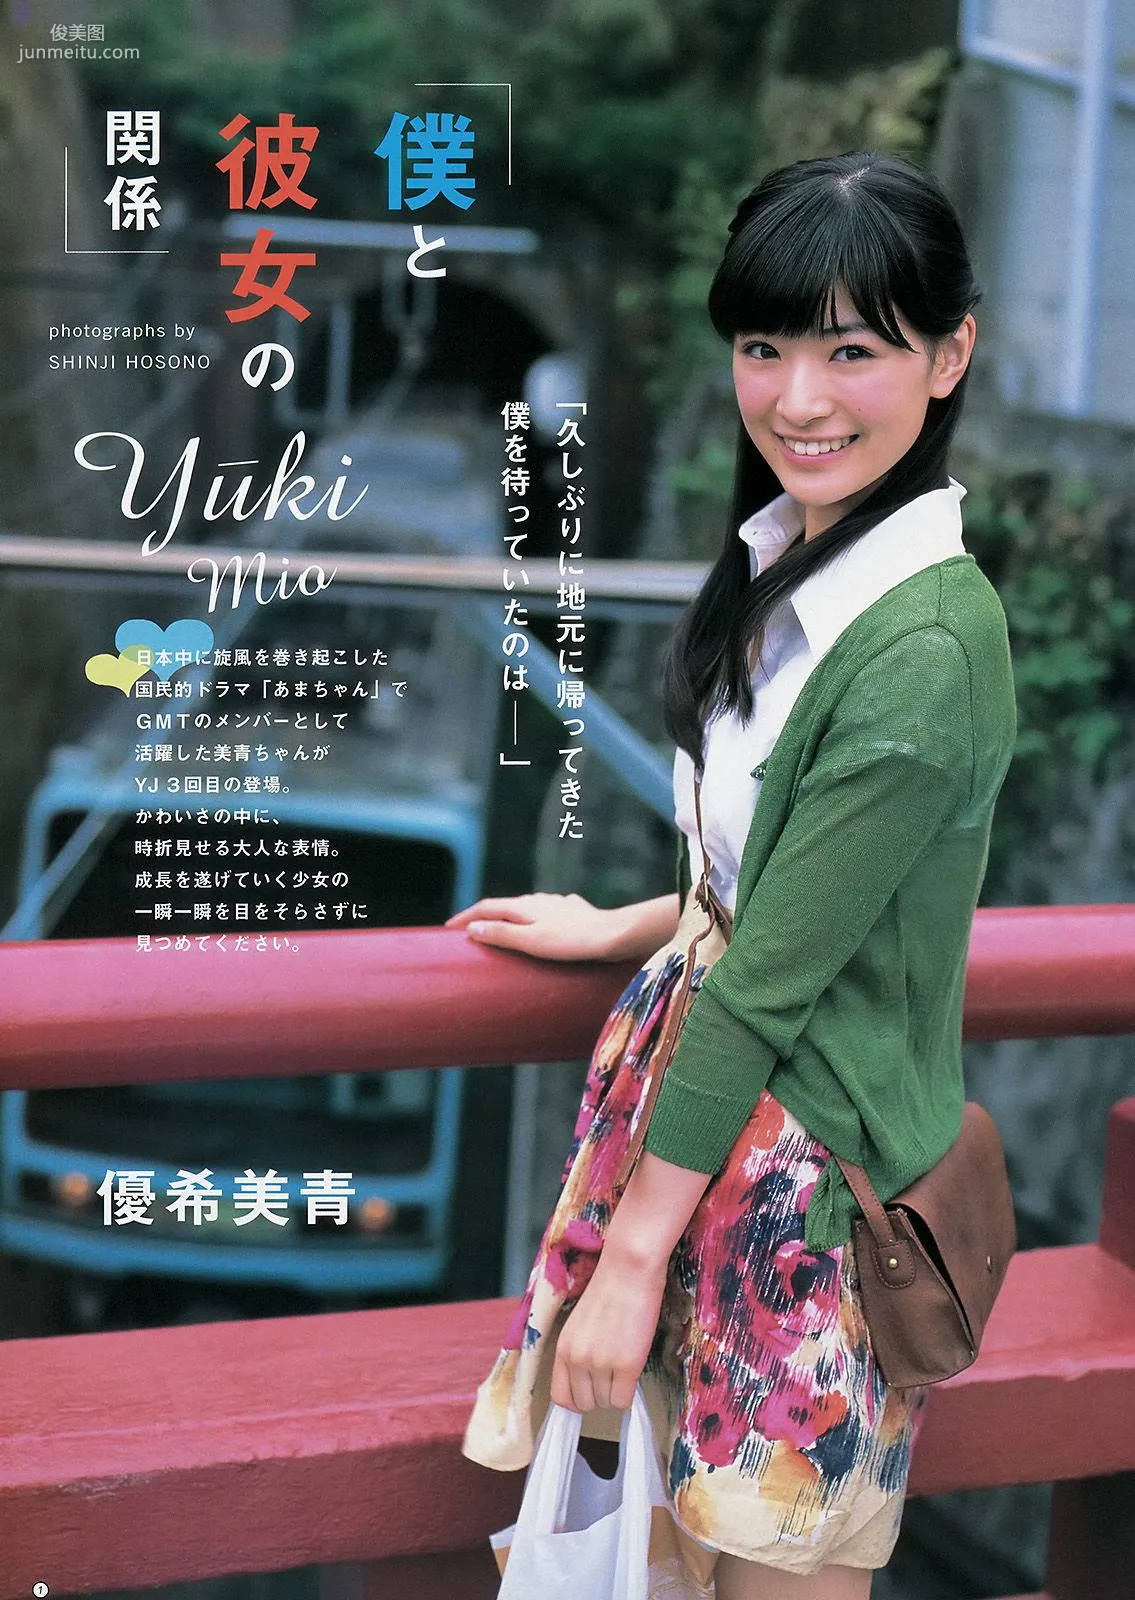 相楽樹 糸山千恵 優希美青 [Weekly Young Jump] 2013年No.50 写真杂志13